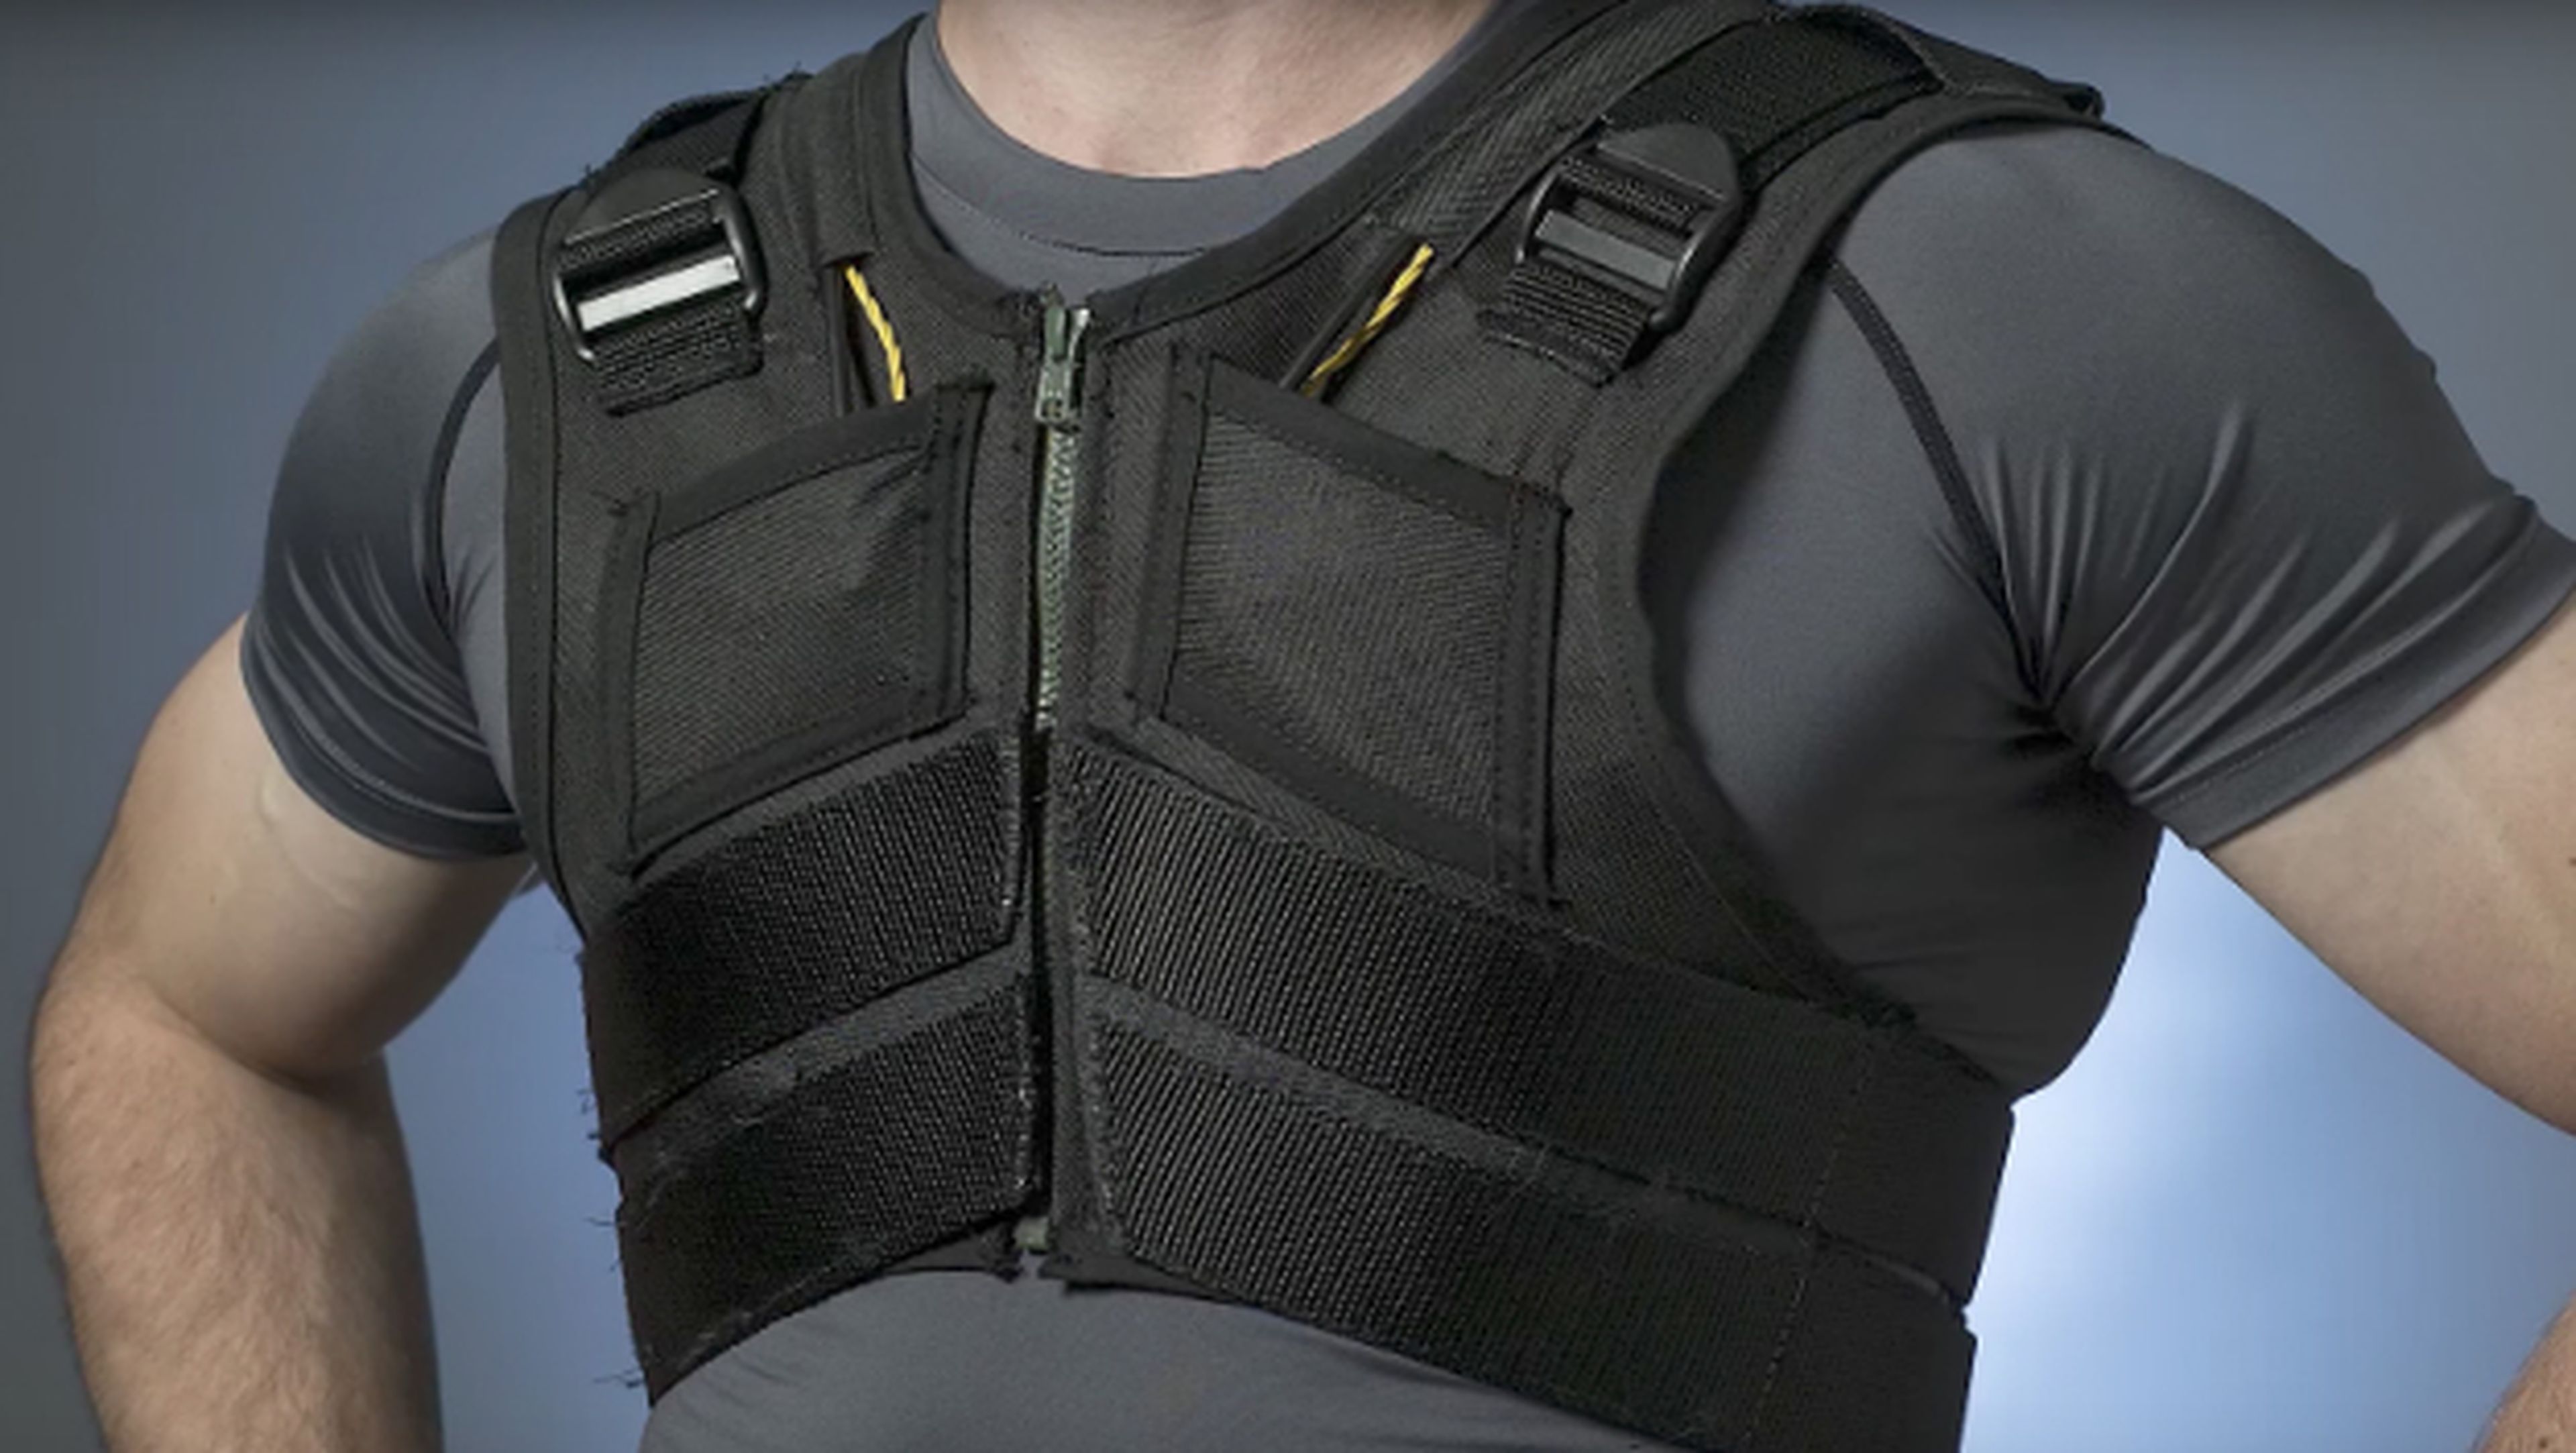 Ingenieros han inventado esta ropa interior inteligente que previene dolores de espalda como el lumbago